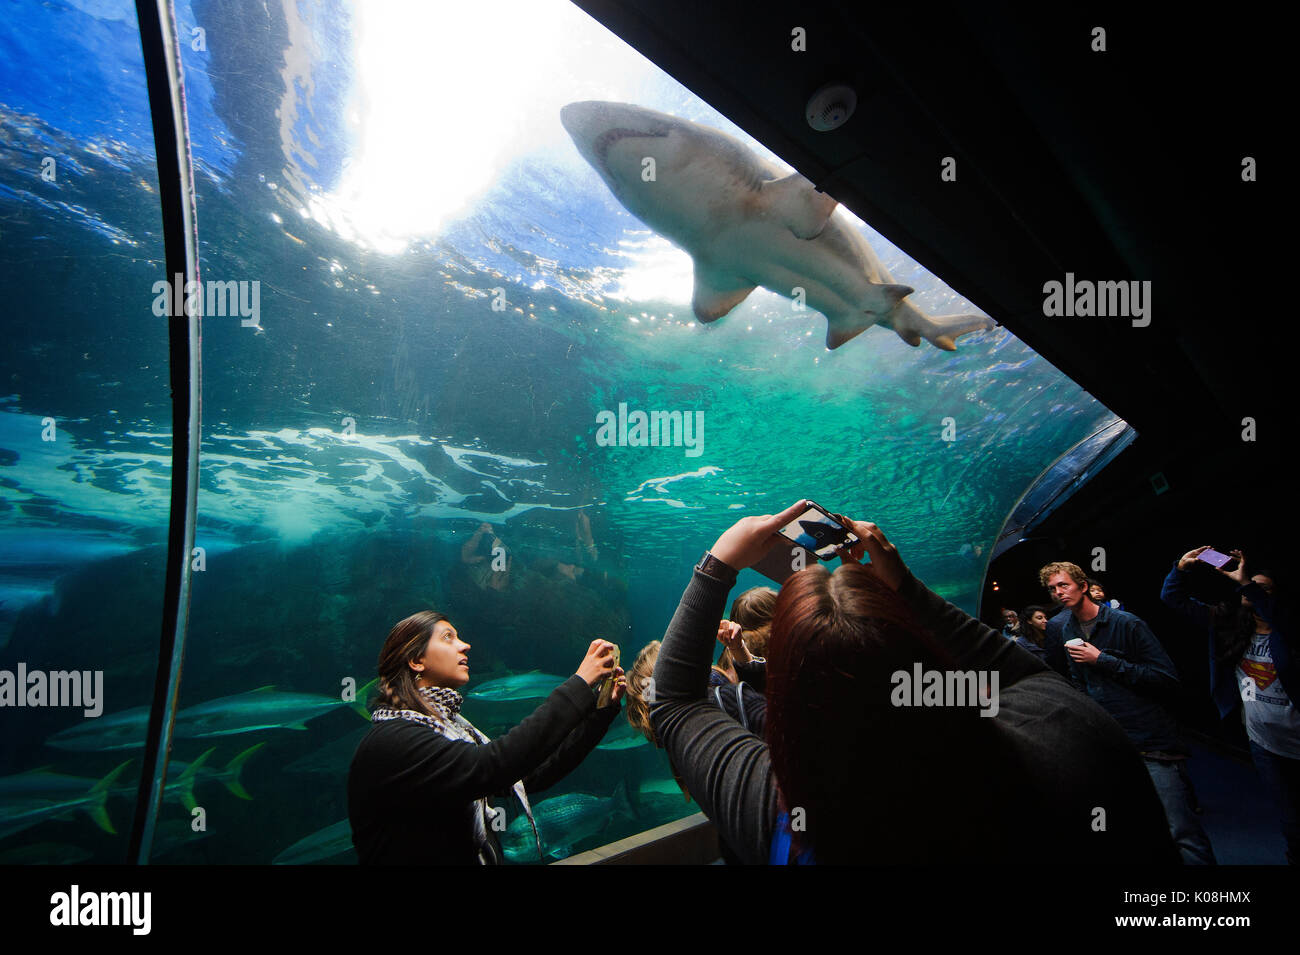 Visitors enjoying views of a shark at an exhibit of the ocean fauna at ...